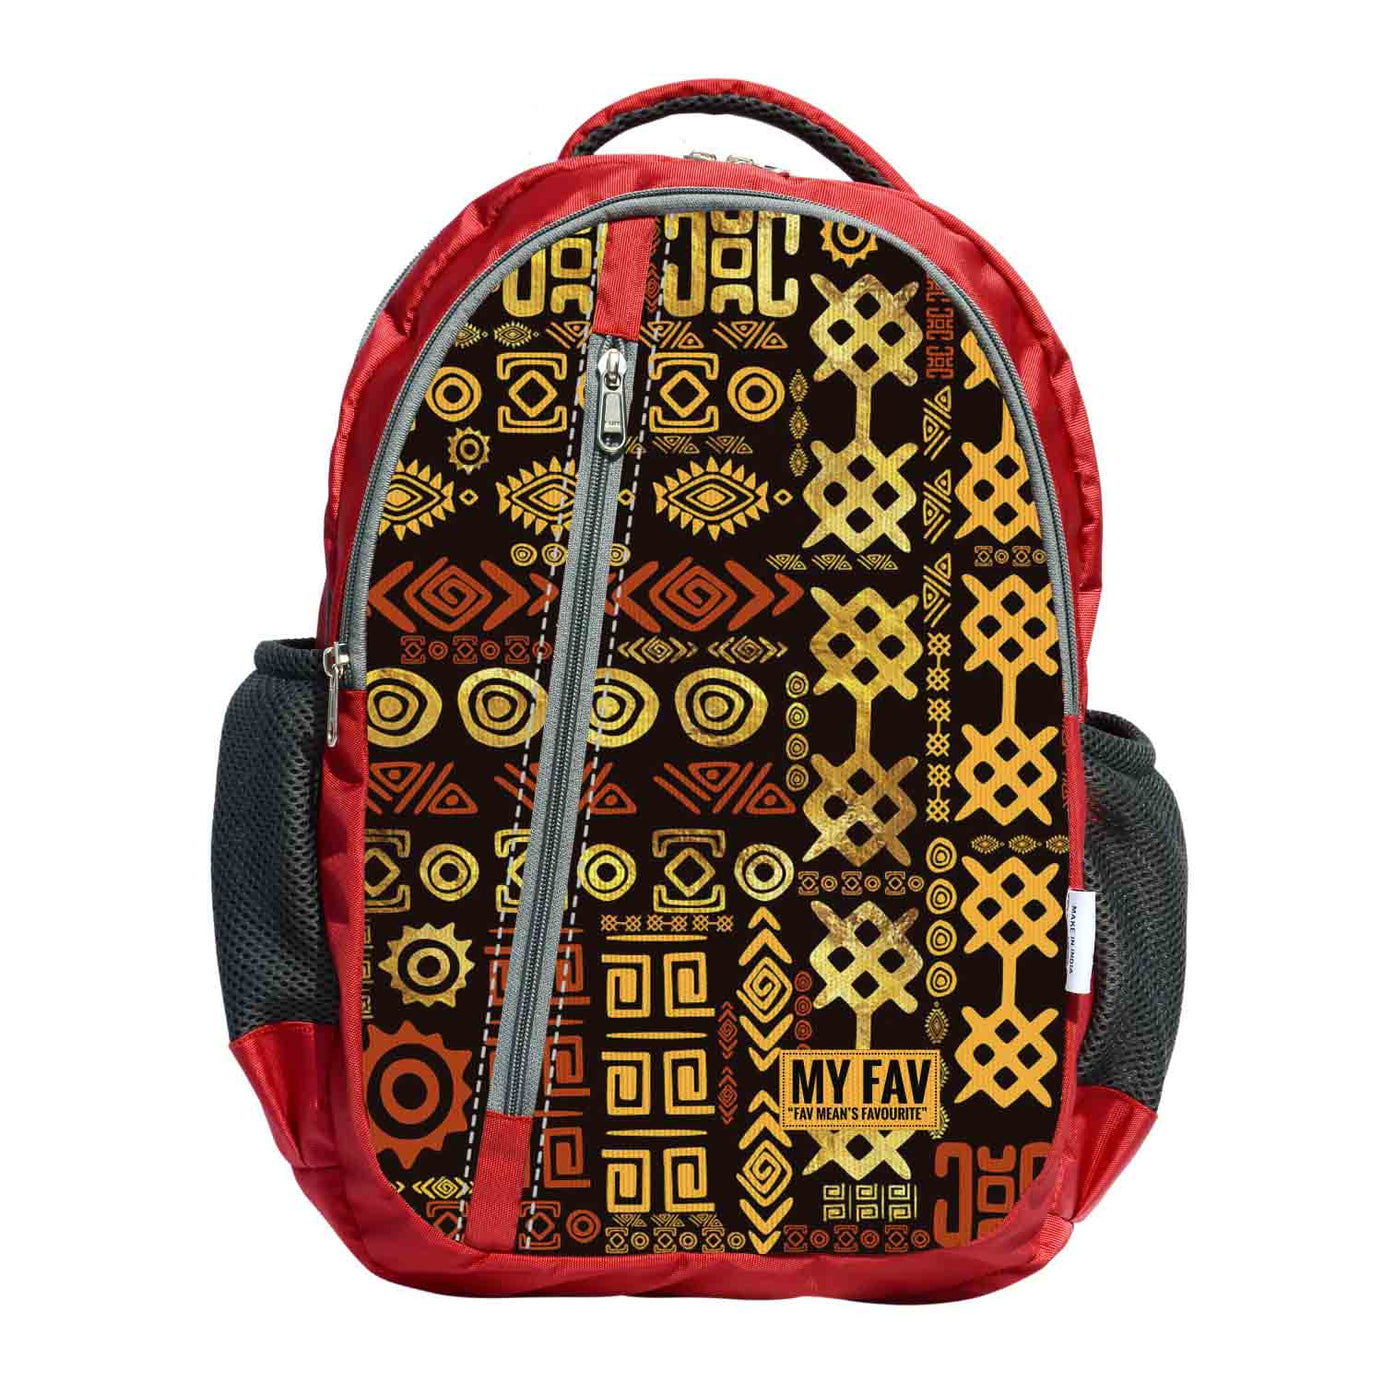 My Fav Digital Print Laptop Backpack For Men Women / School Bag For Boys Girls